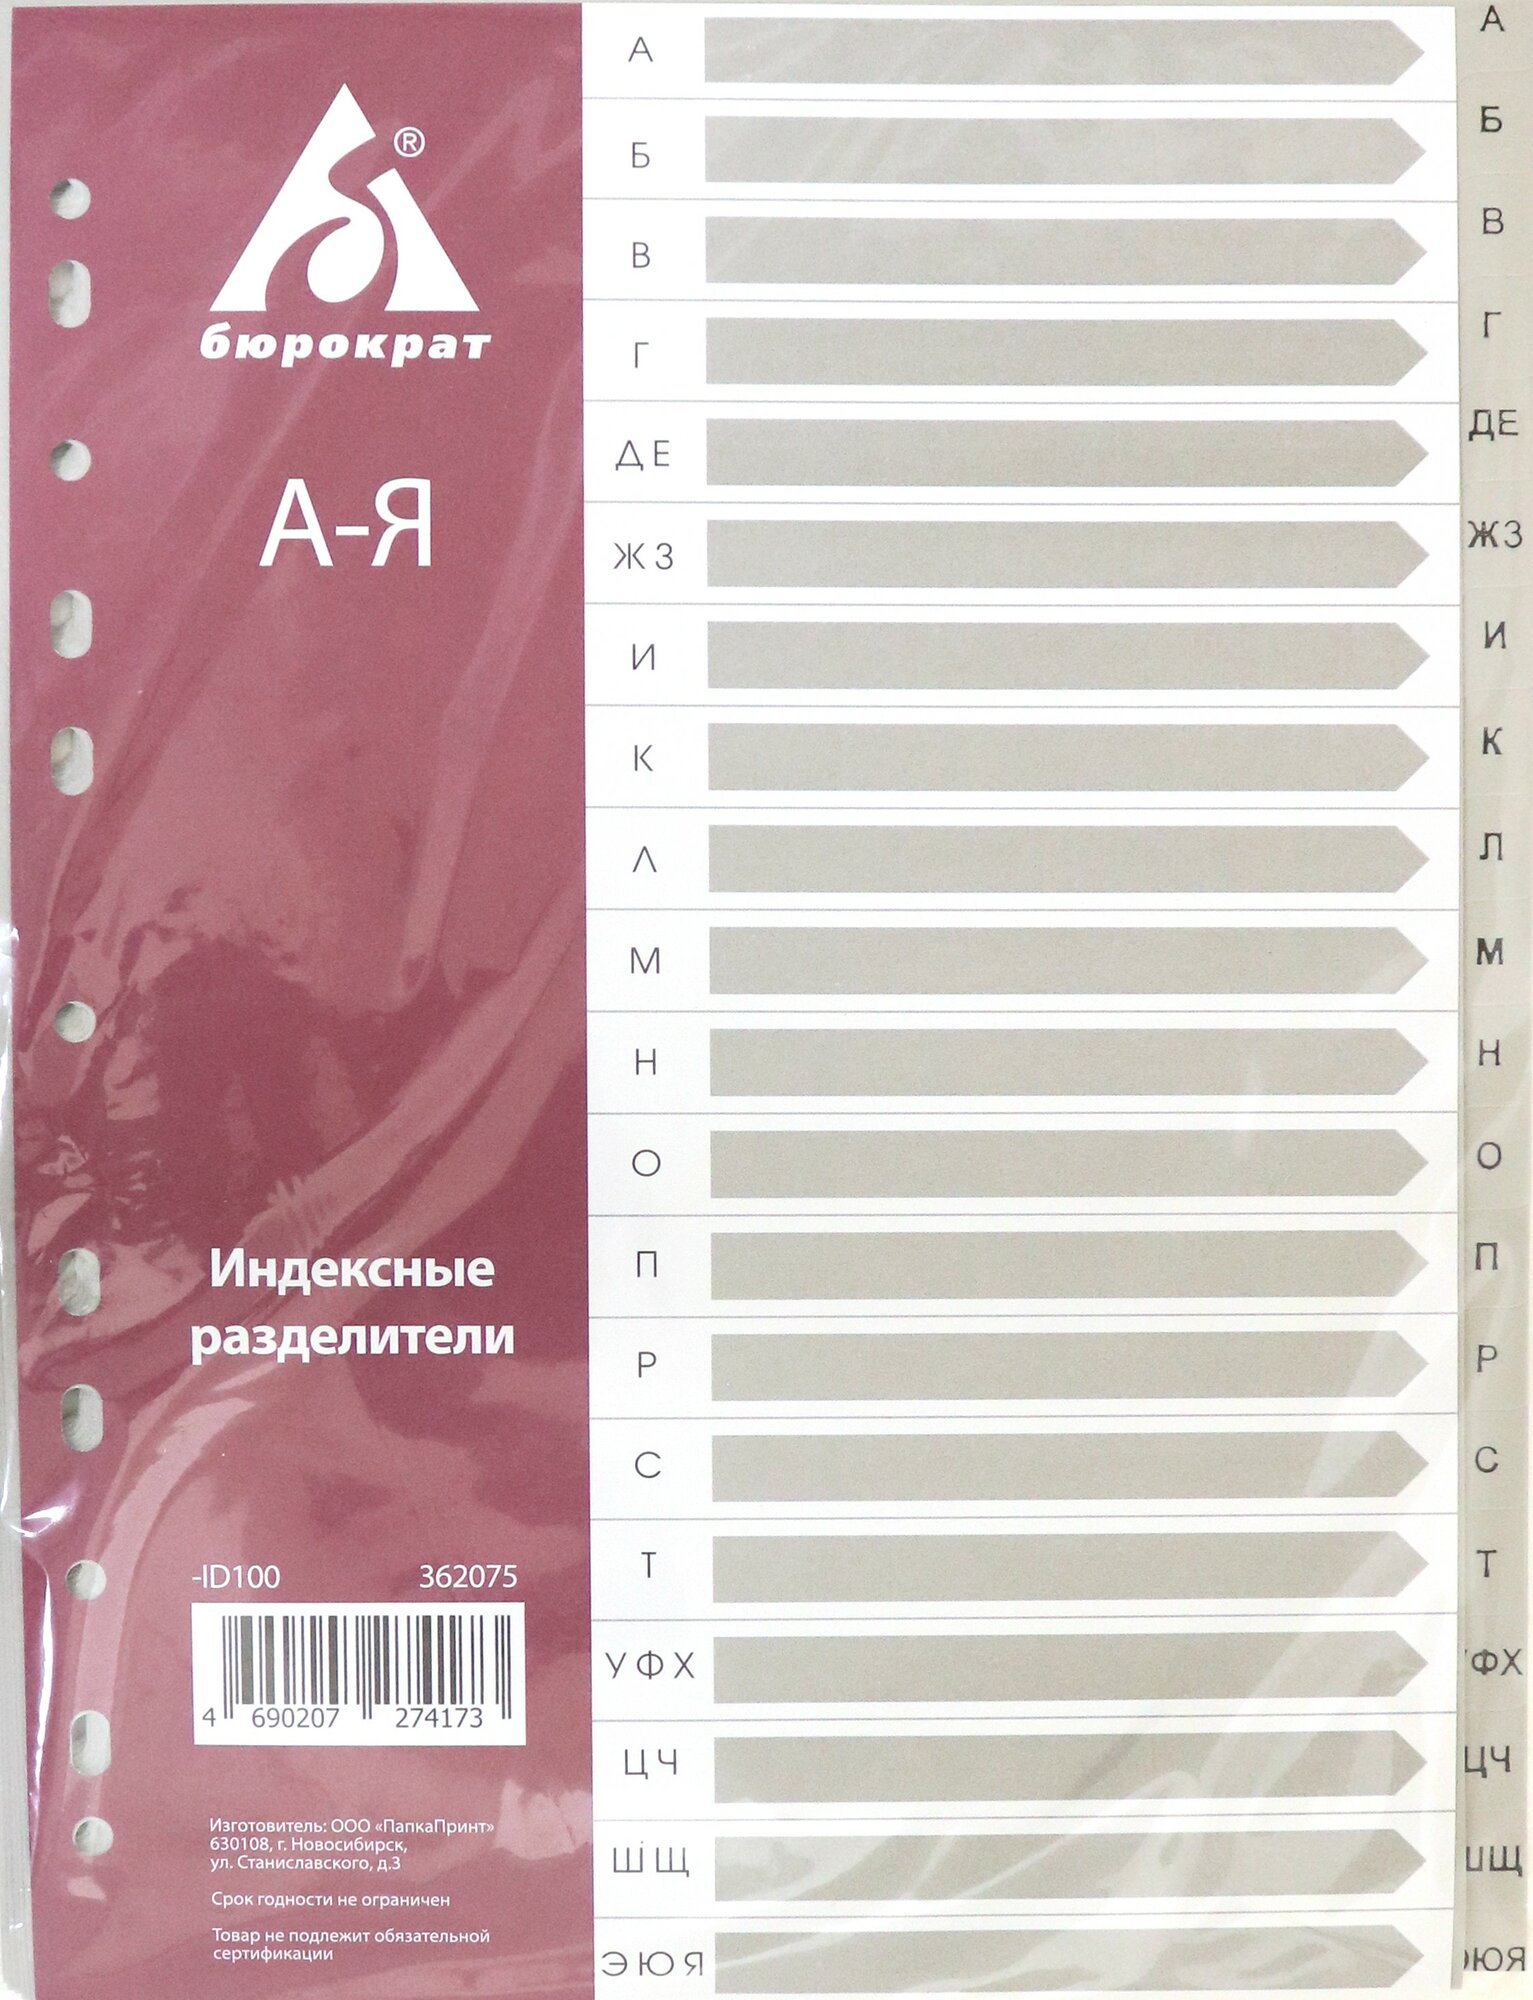 Разделитель индексный A4 пластиковый А-Я (ID100) Бюрократ - фото №4